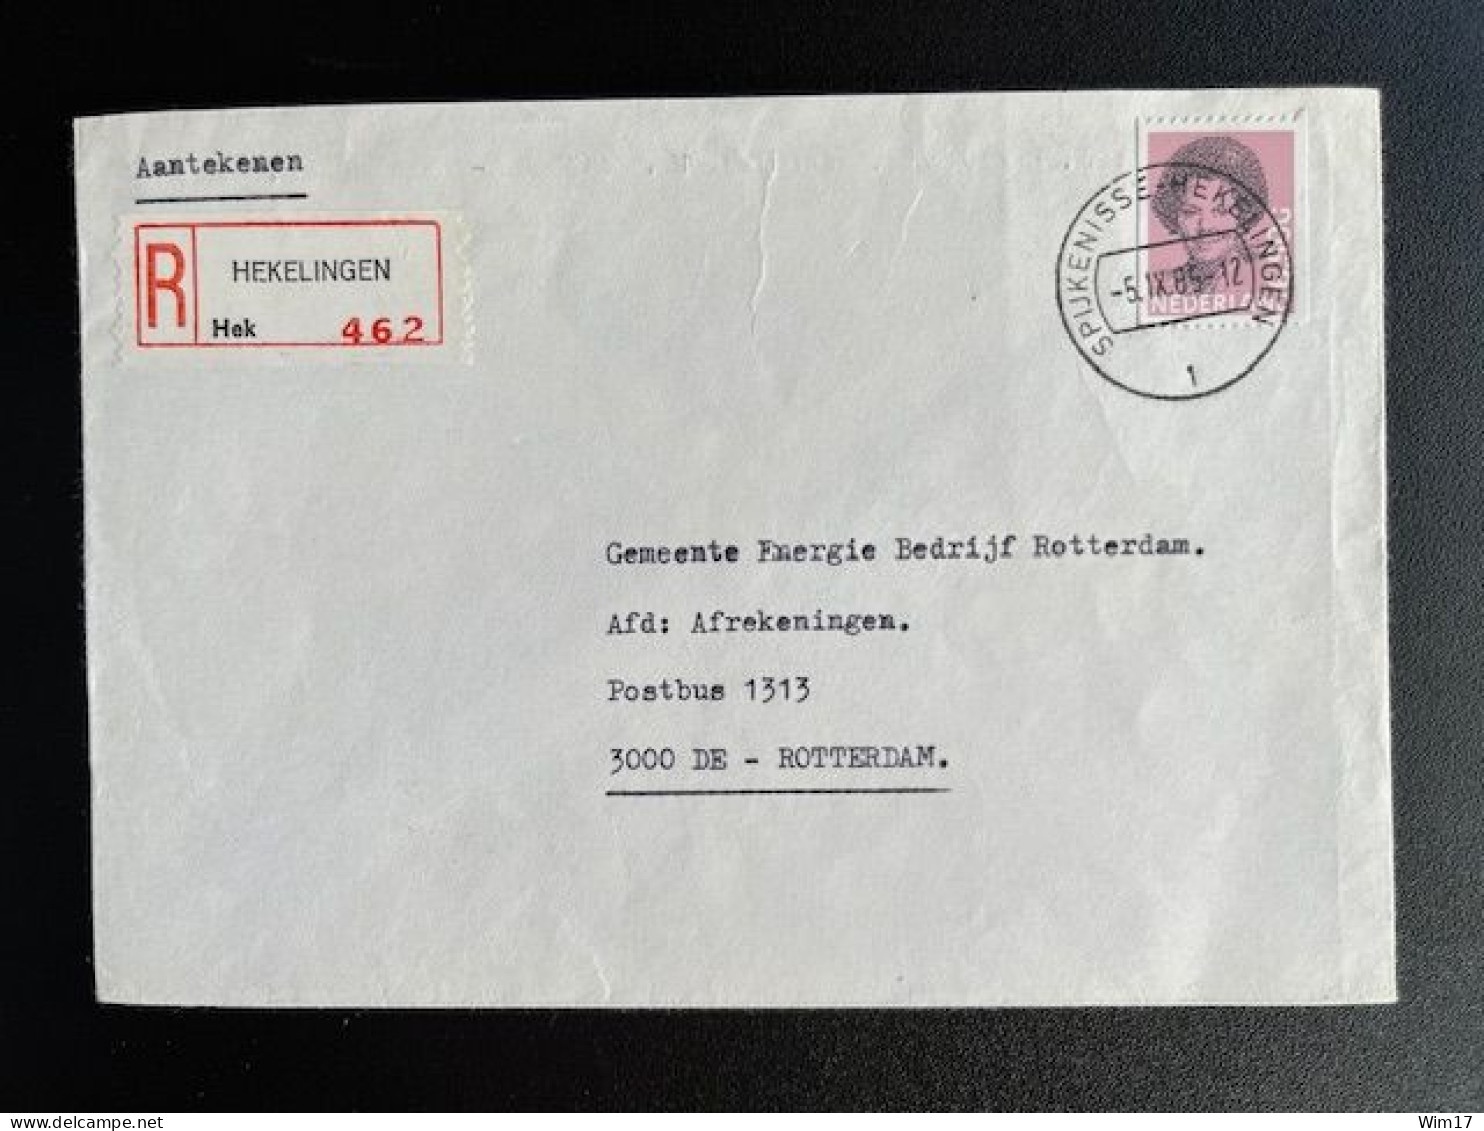 NETHERLANDS 1985 REGISTERED LETTER HEKELINGEN TO ROTTERDAM 05-09-1985 NEDERLAND AANGETEKEND - Briefe U. Dokumente